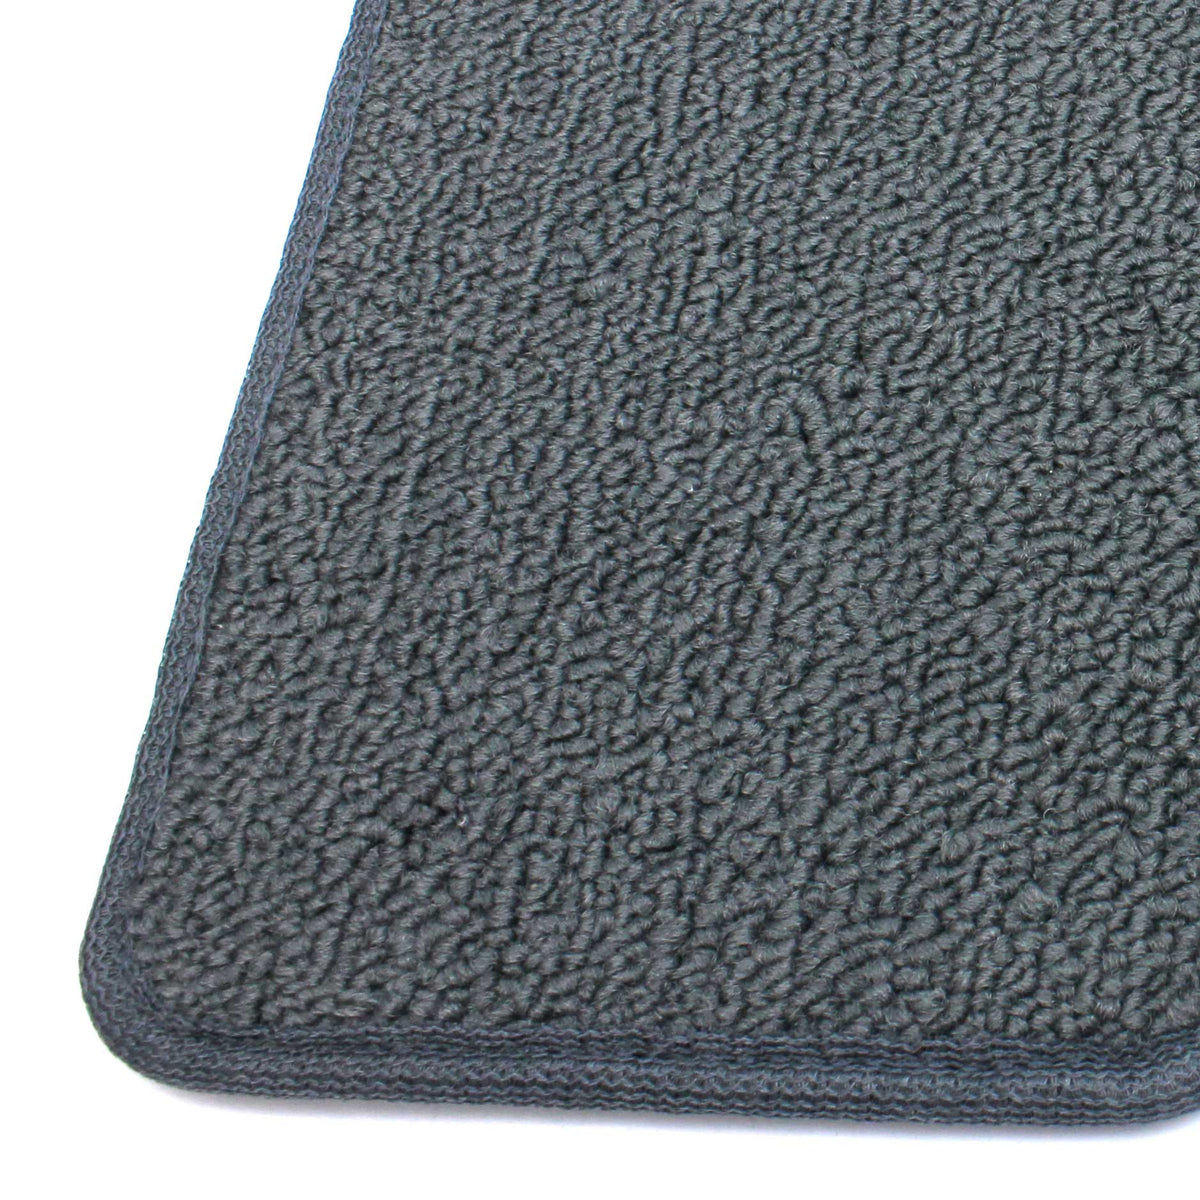 Land cruiser floor mats